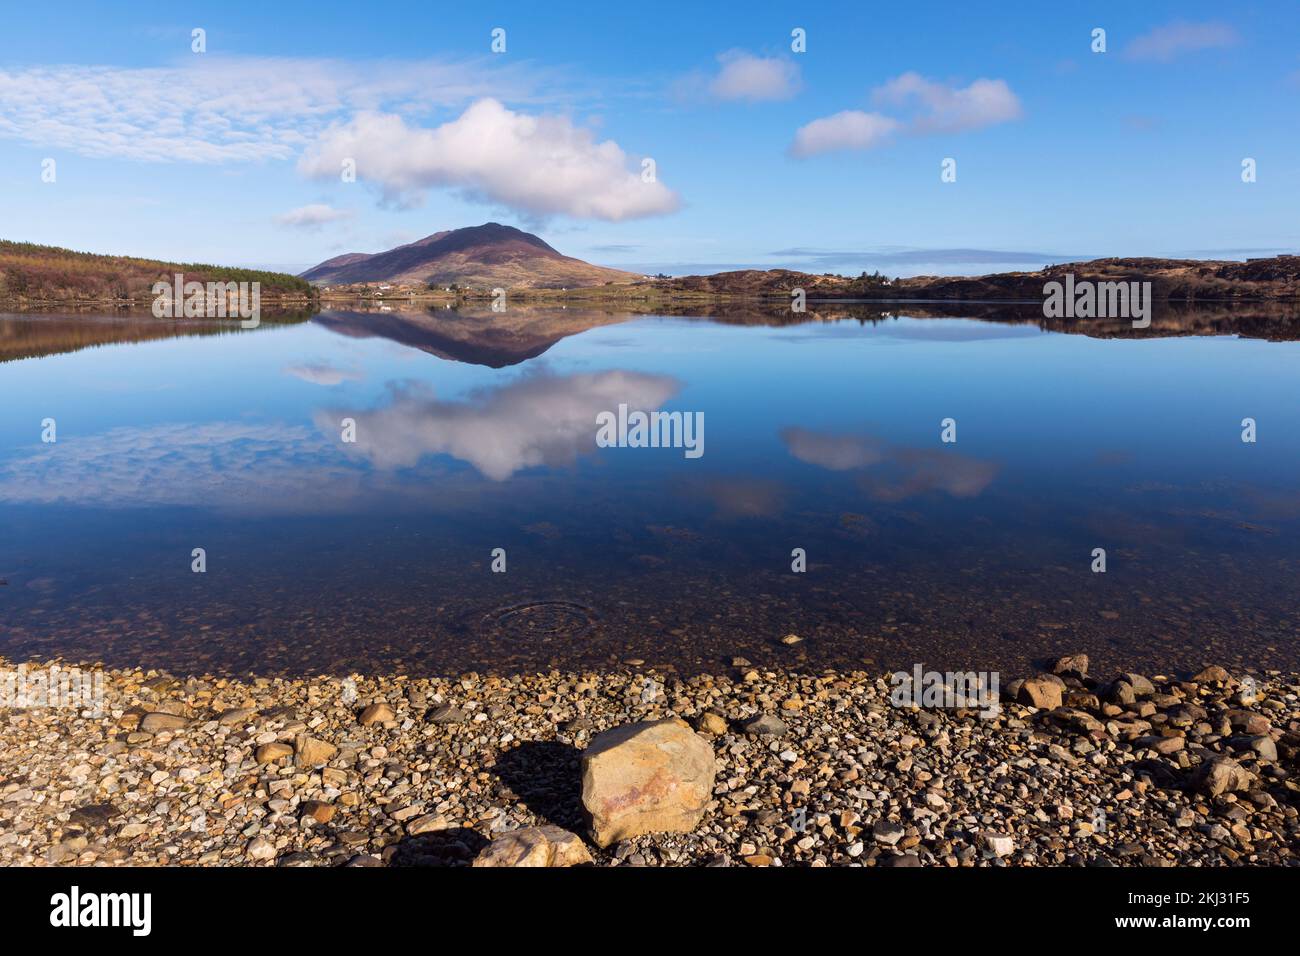 Irlanda, Connemara, Parque Nacional de Connemara, reflejo del paisaje en un lago. Foto de stock